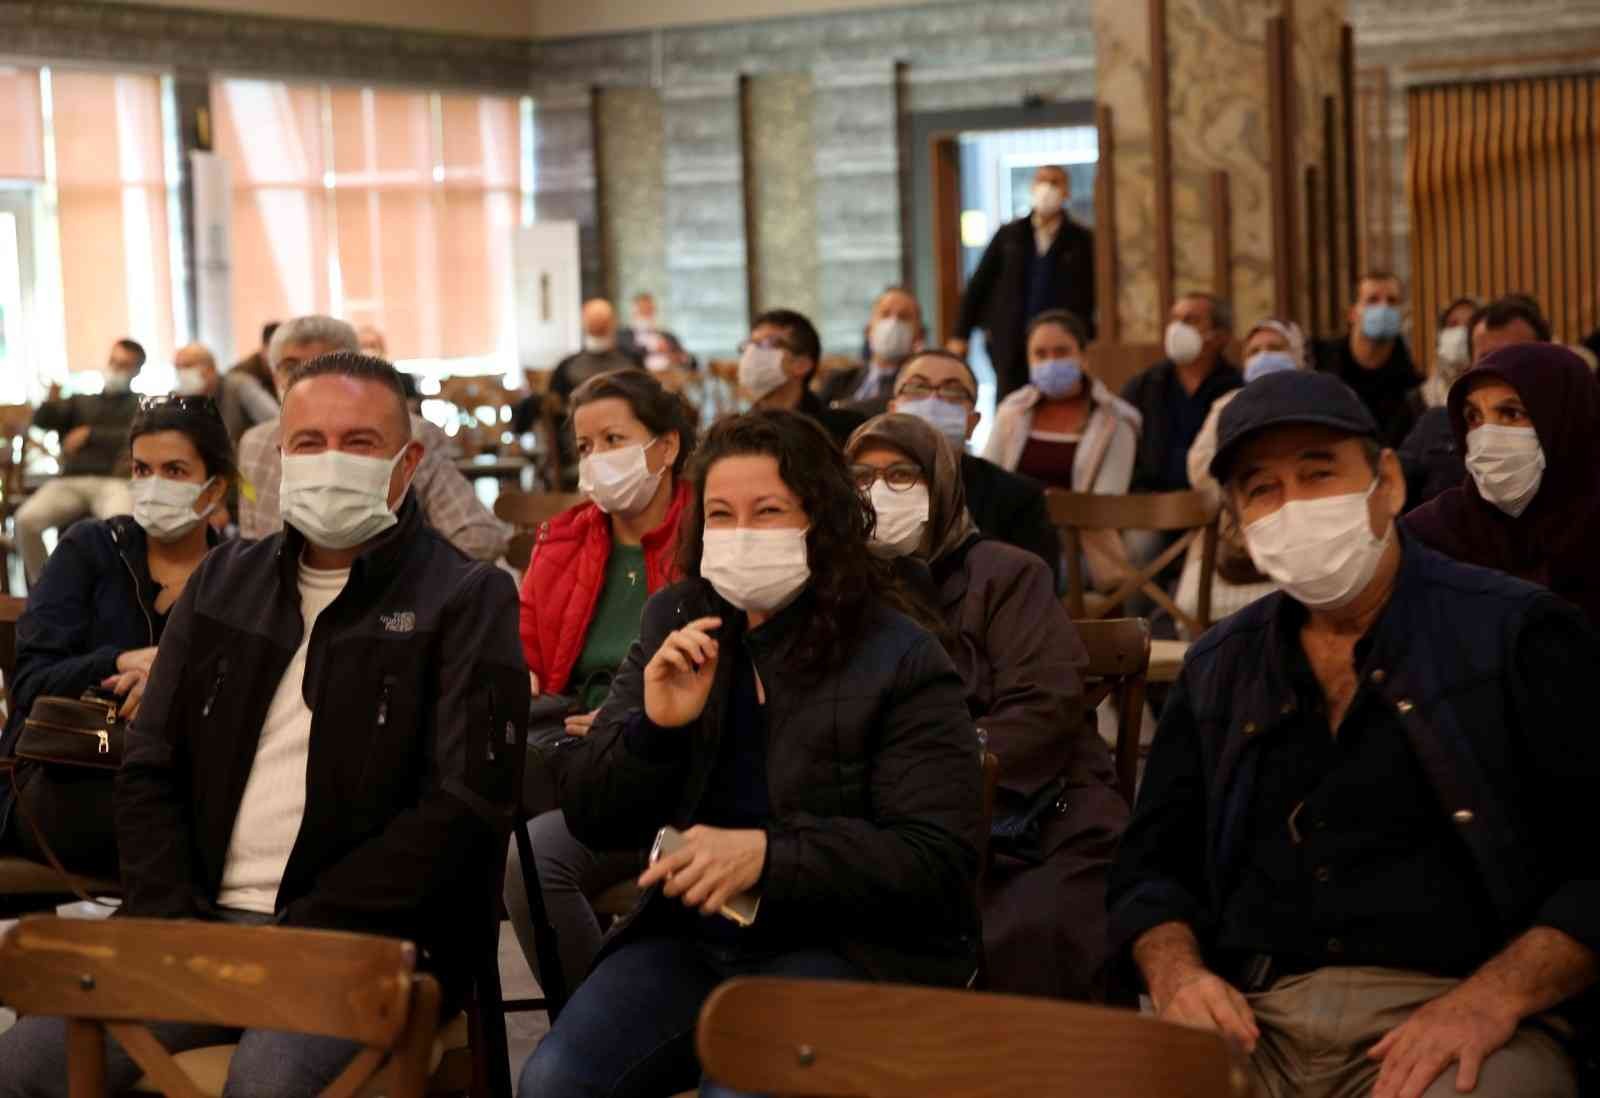 Sağlık çalışanlarına özel konutlarda hak sahipleri belli oldu #kocaeli